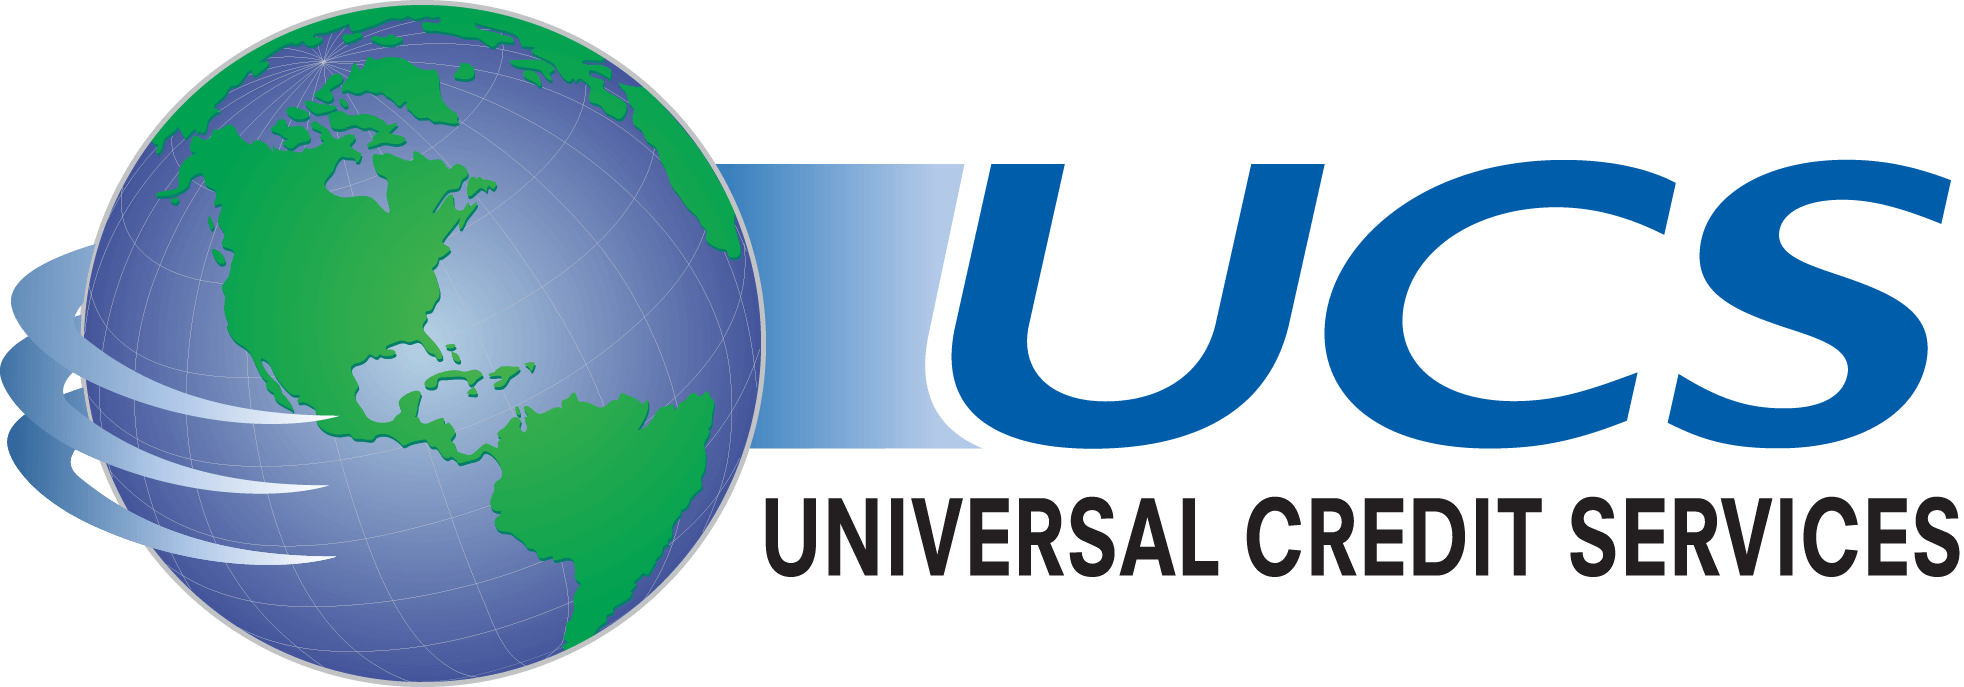 ucs-logo